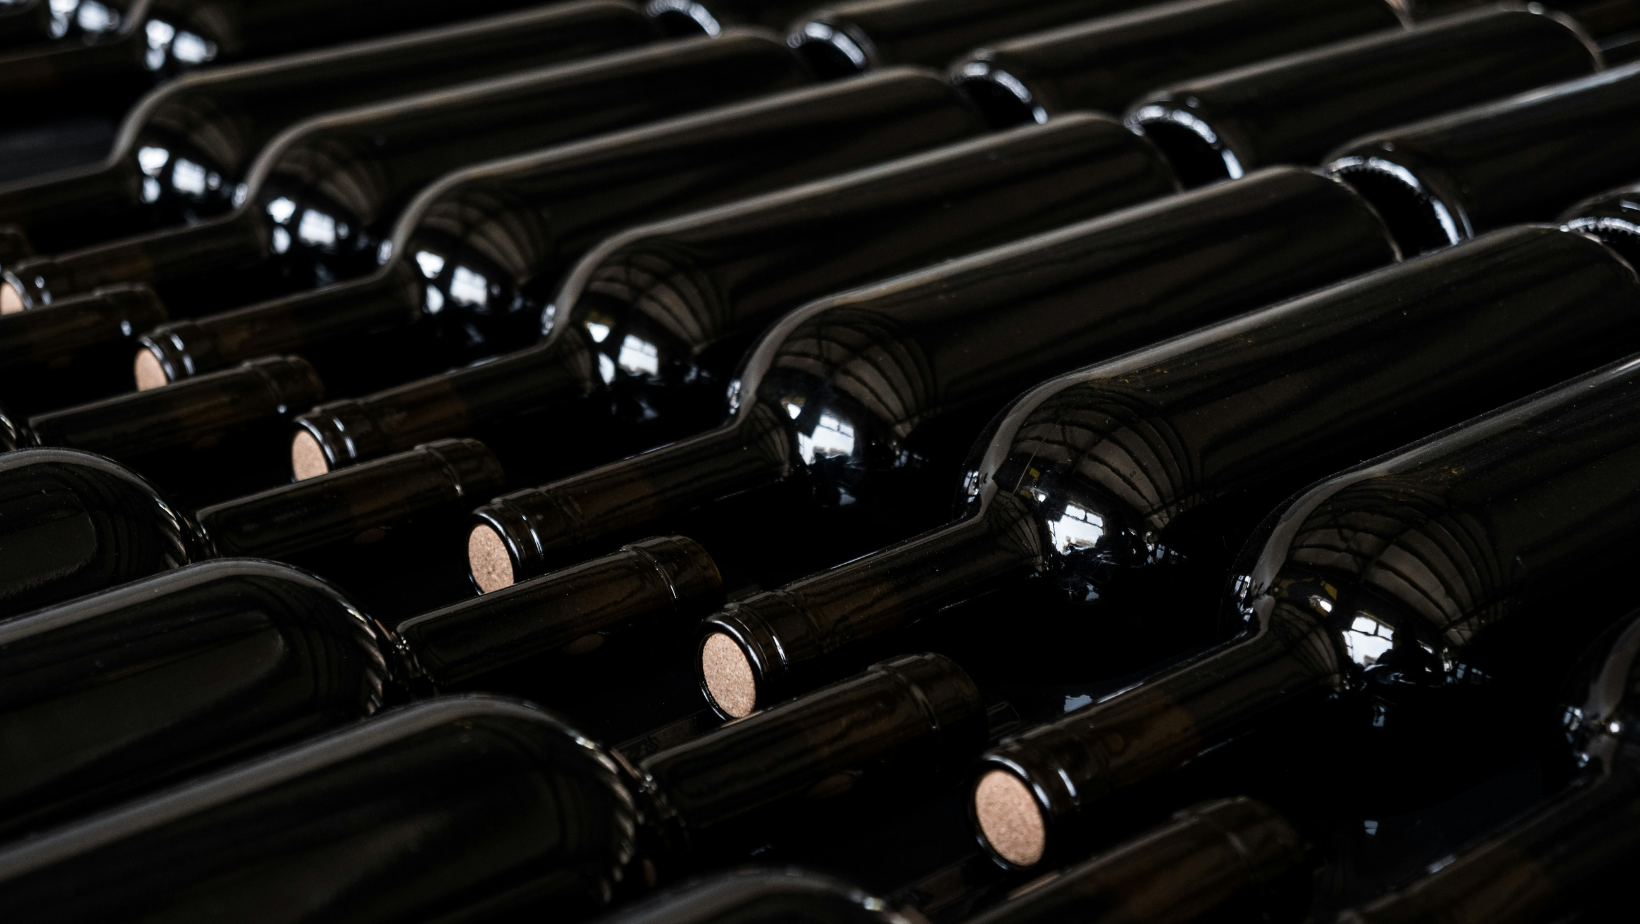 Notizie sul vino: dal primo vigneto della città di Firenza alla proroga delle nuova normativa per le etichette di vino, passando per le prime bottiglie di Barolo con tappo a vite